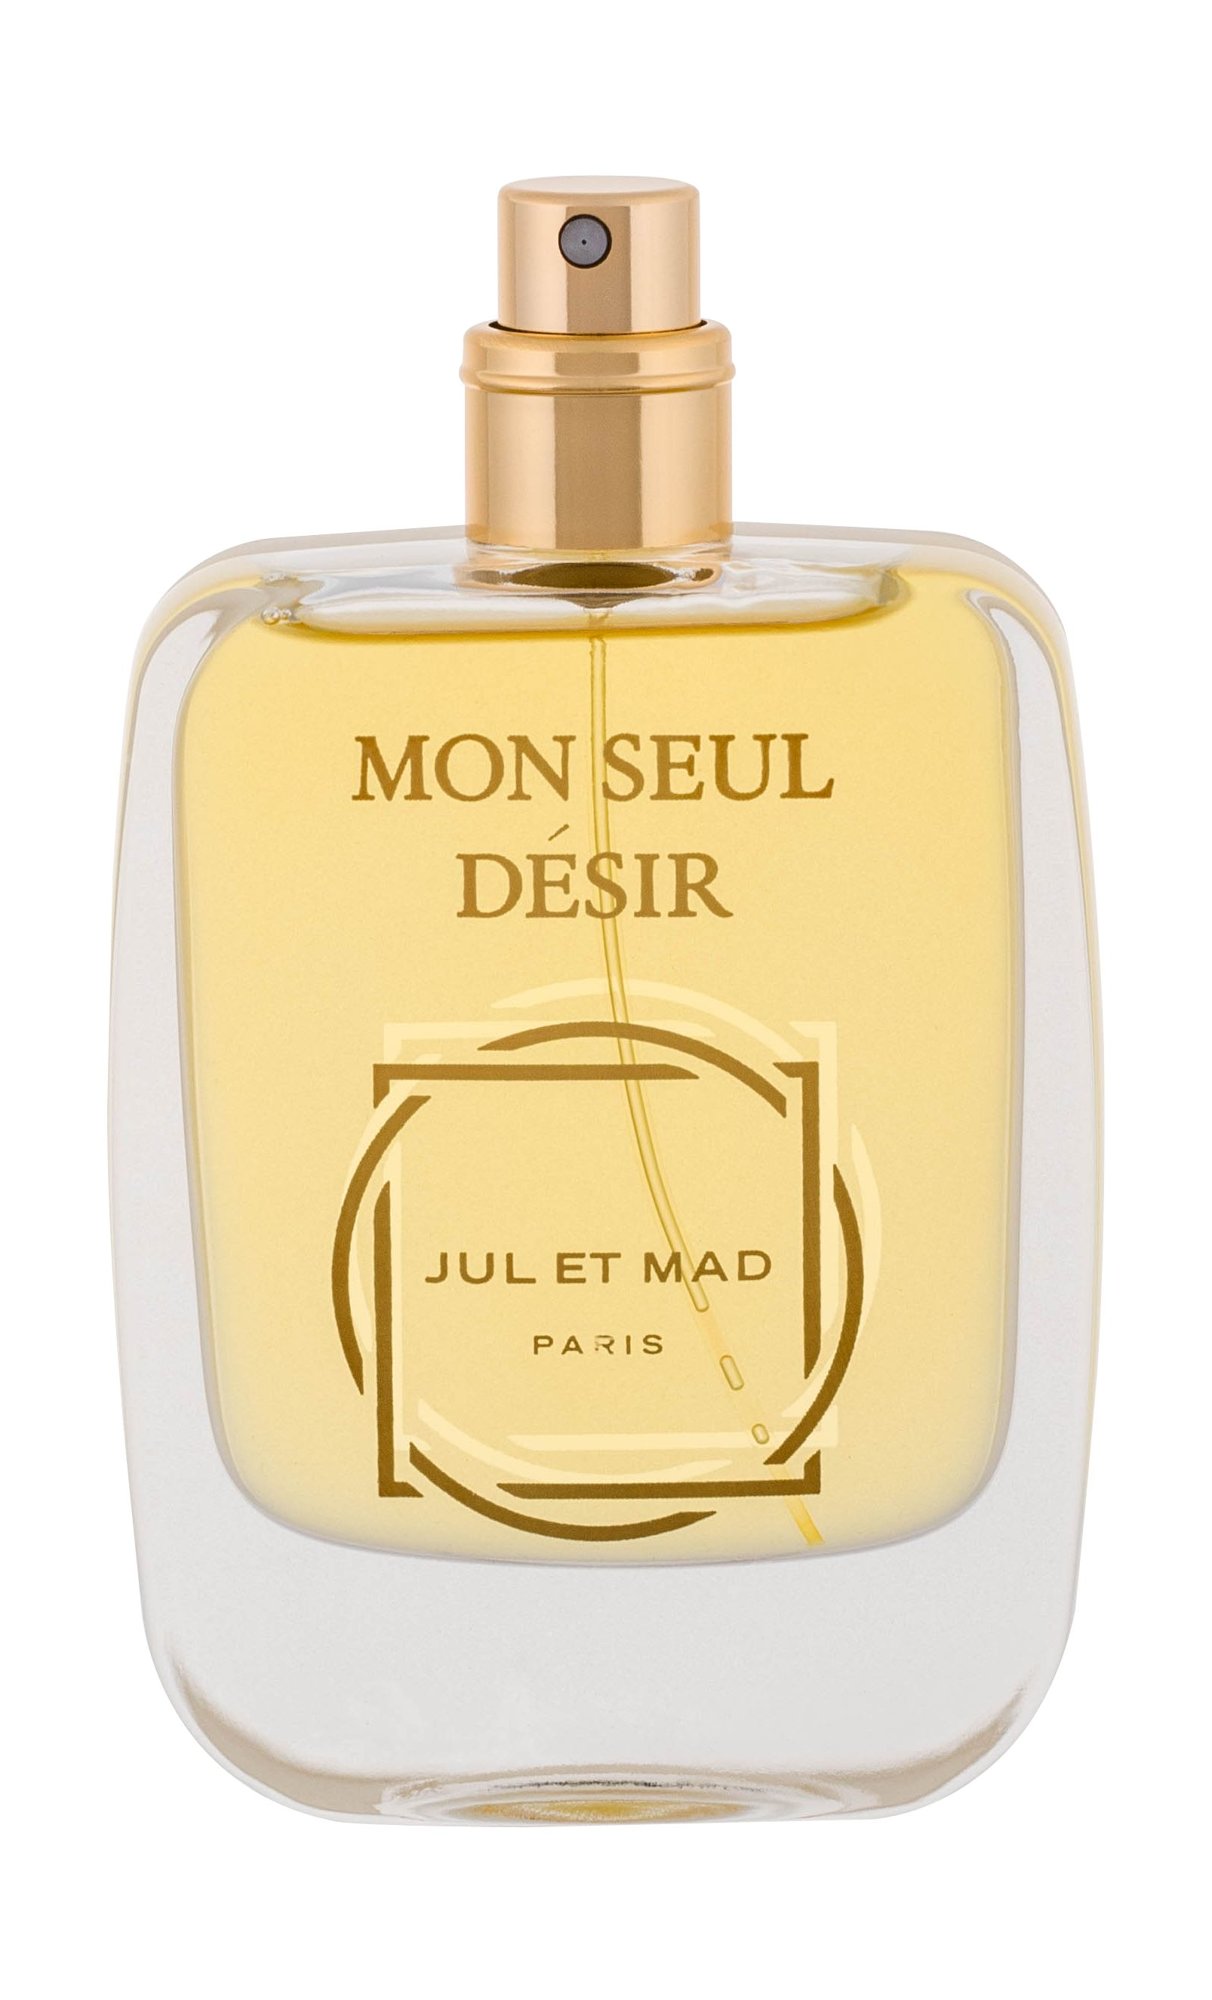 Jul et Mad Paris Mon Seul Desir 50ml NIŠINIAI Kvepalai Unisex Parfum Testeris